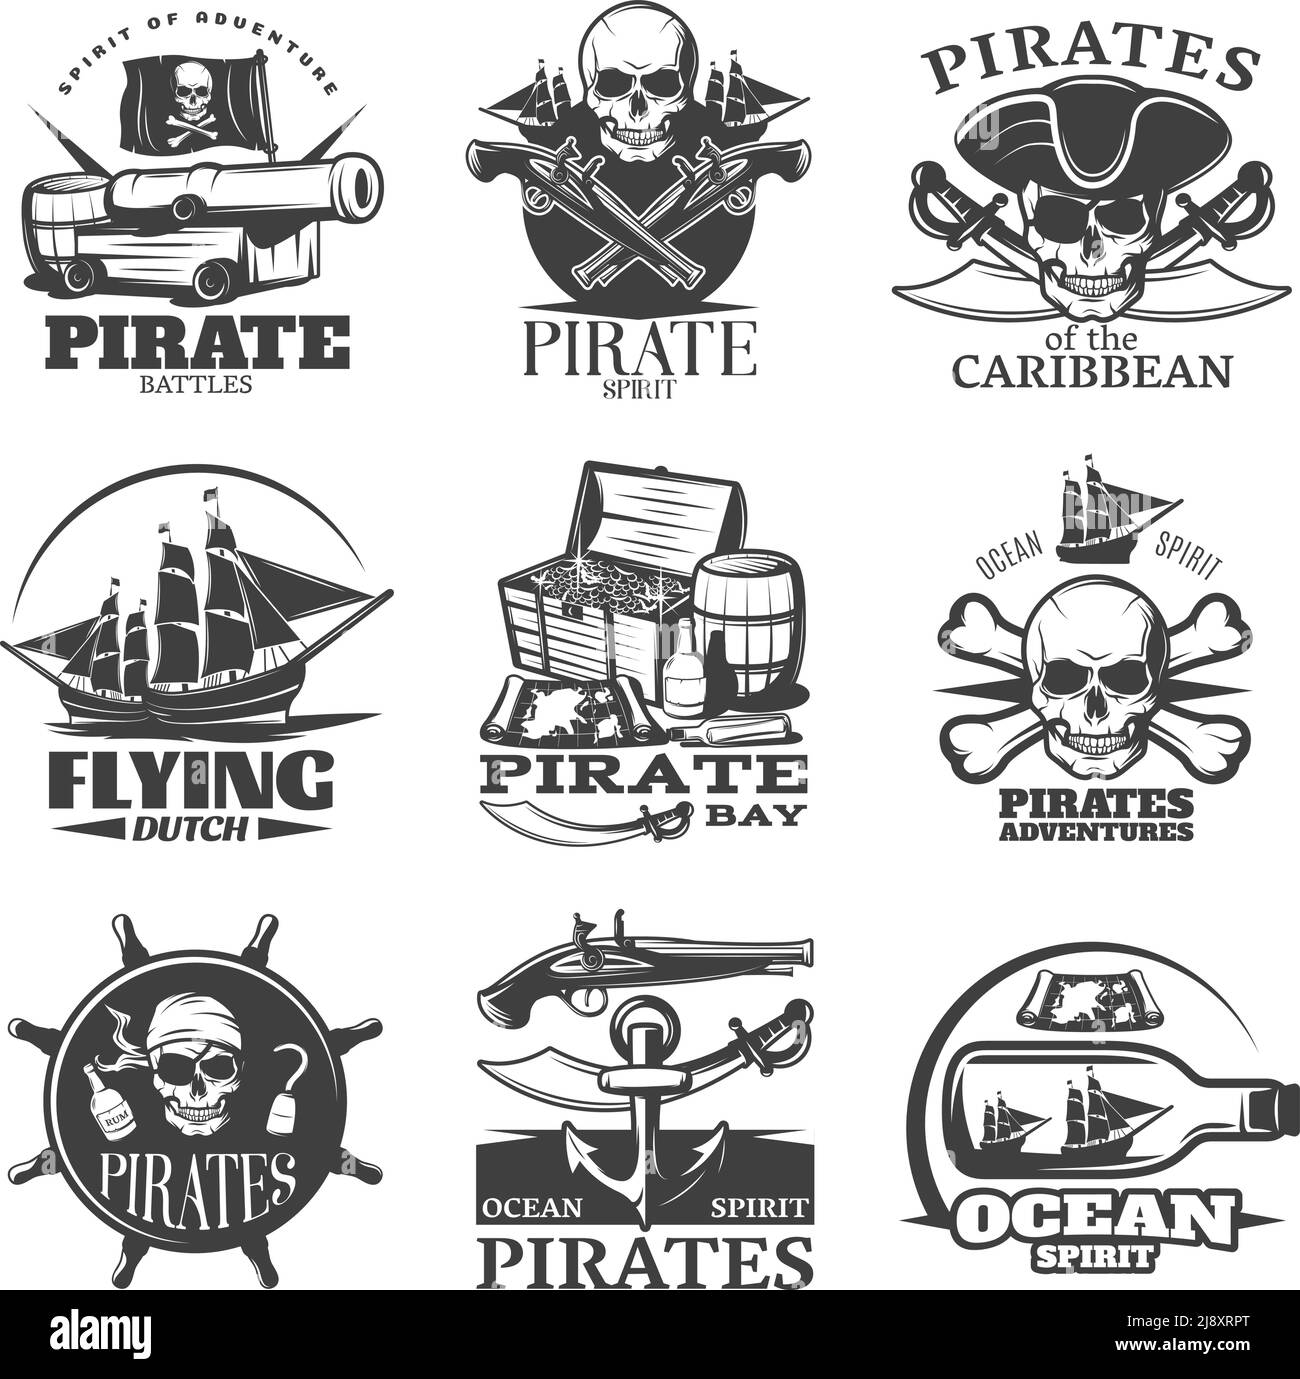 Emblème des pirates avec l'esprit pirate volant de la baie des pirates hollandais pirates aventures descriptions vecteur illustration Illustration de Vecteur